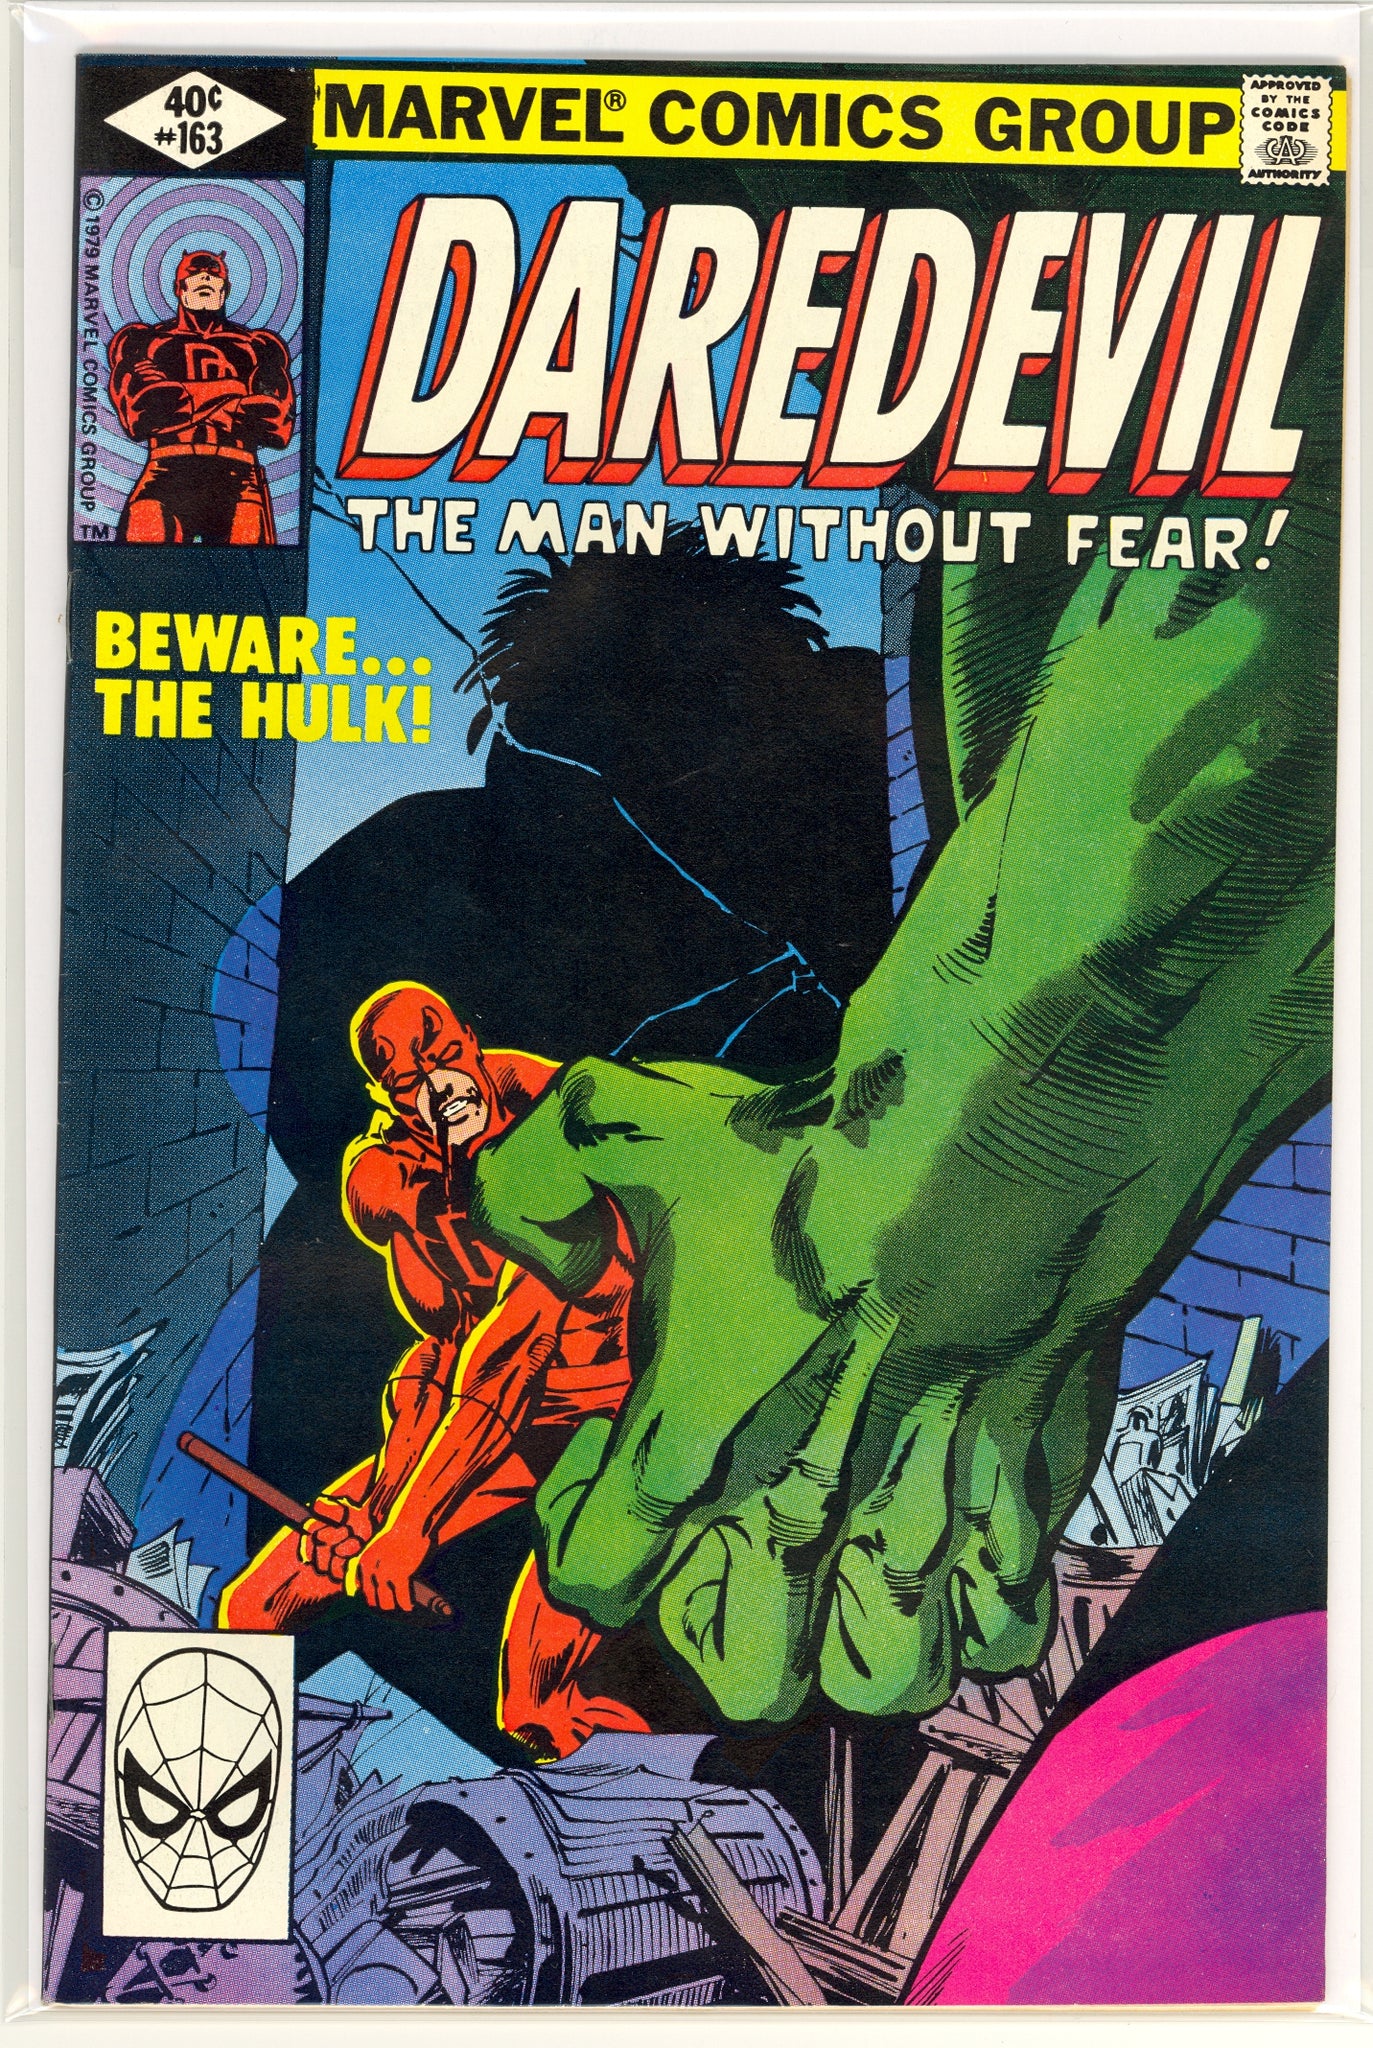 Daredevil #163 (1979) Hulk